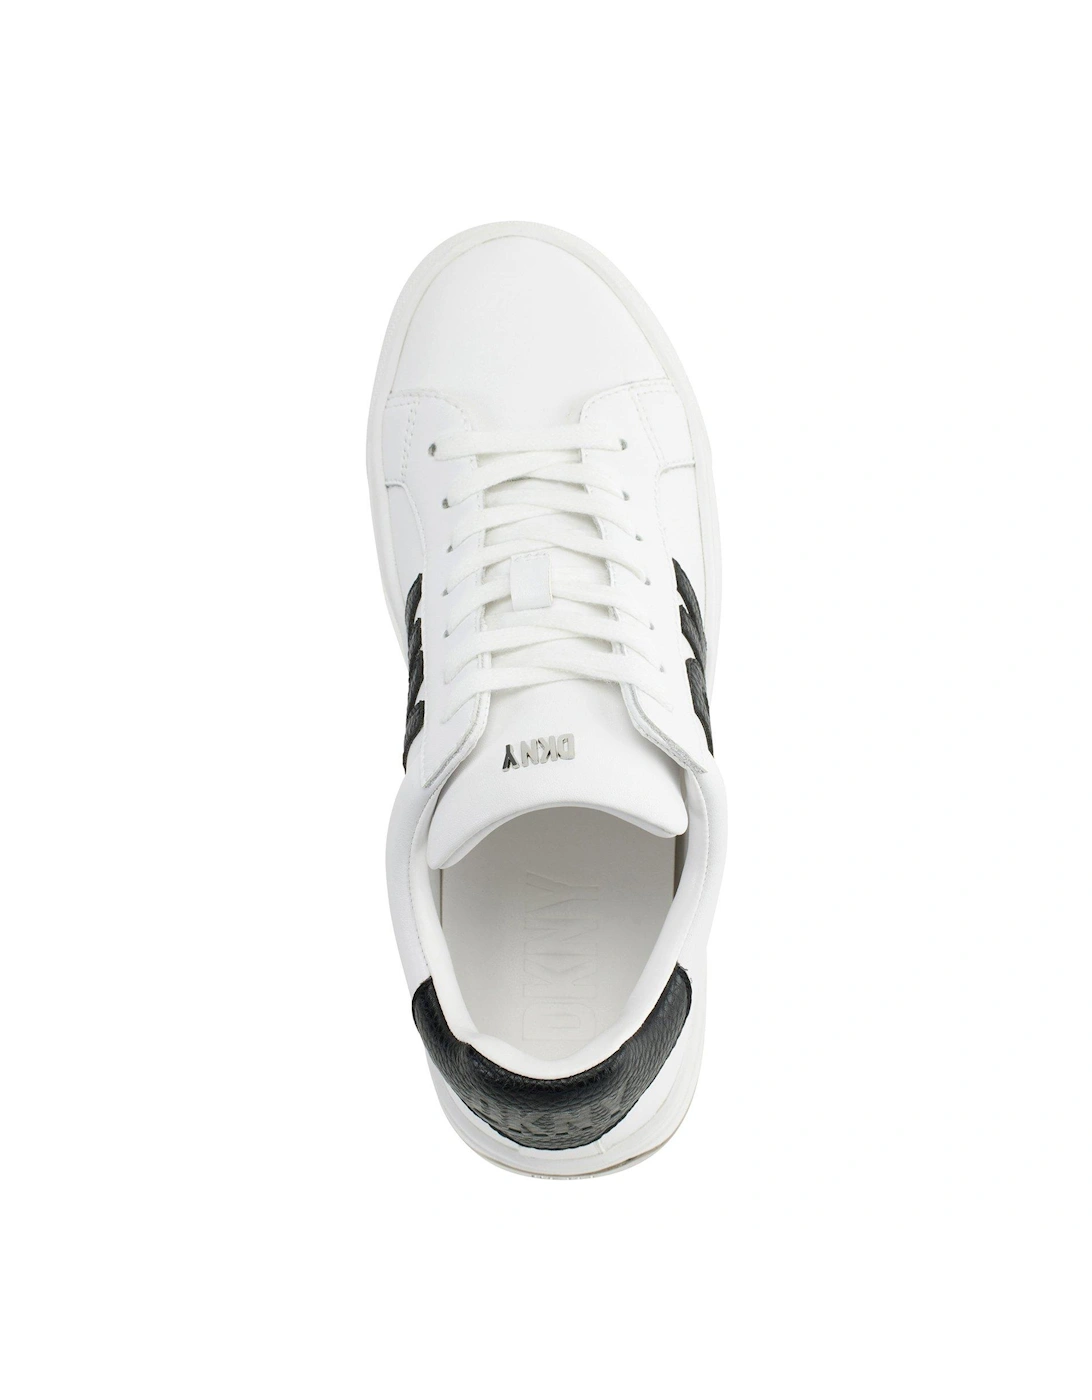 Abeni - Lace Up Sneaker - Brt White/black